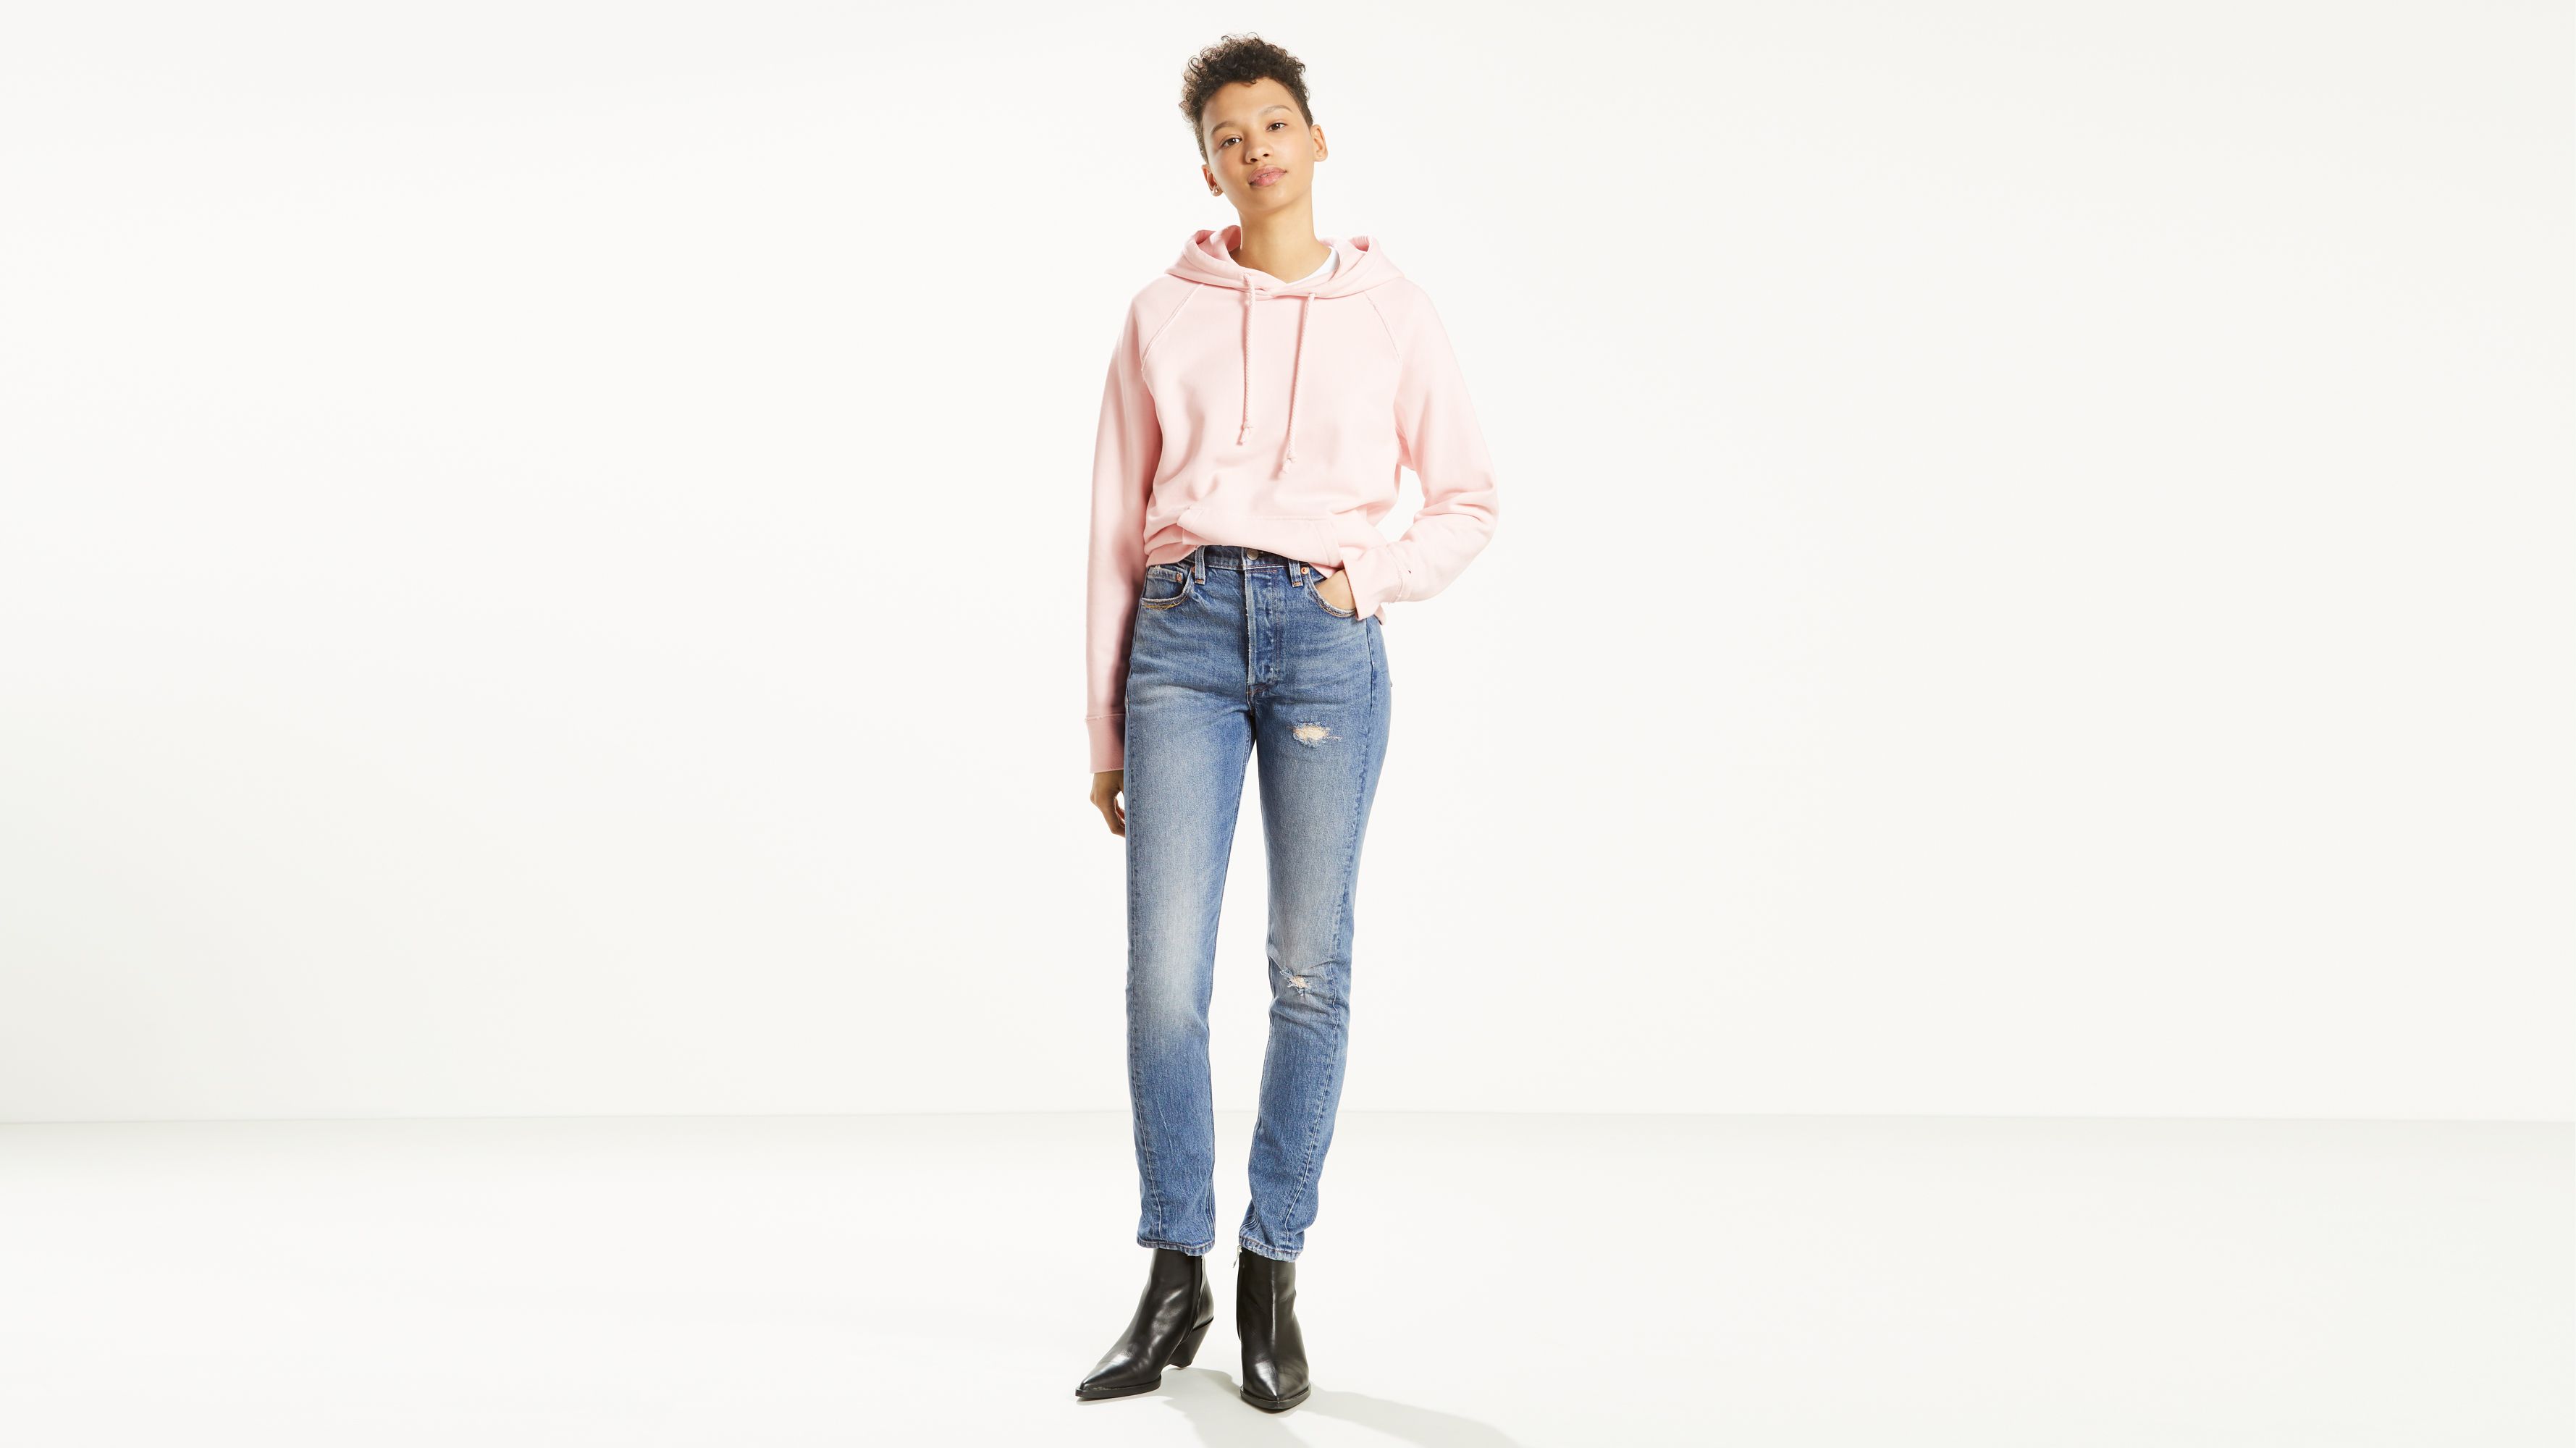 Women&#39;s Jeans On Sale - Shop Discount Jeans | Levi&#39;s® Us